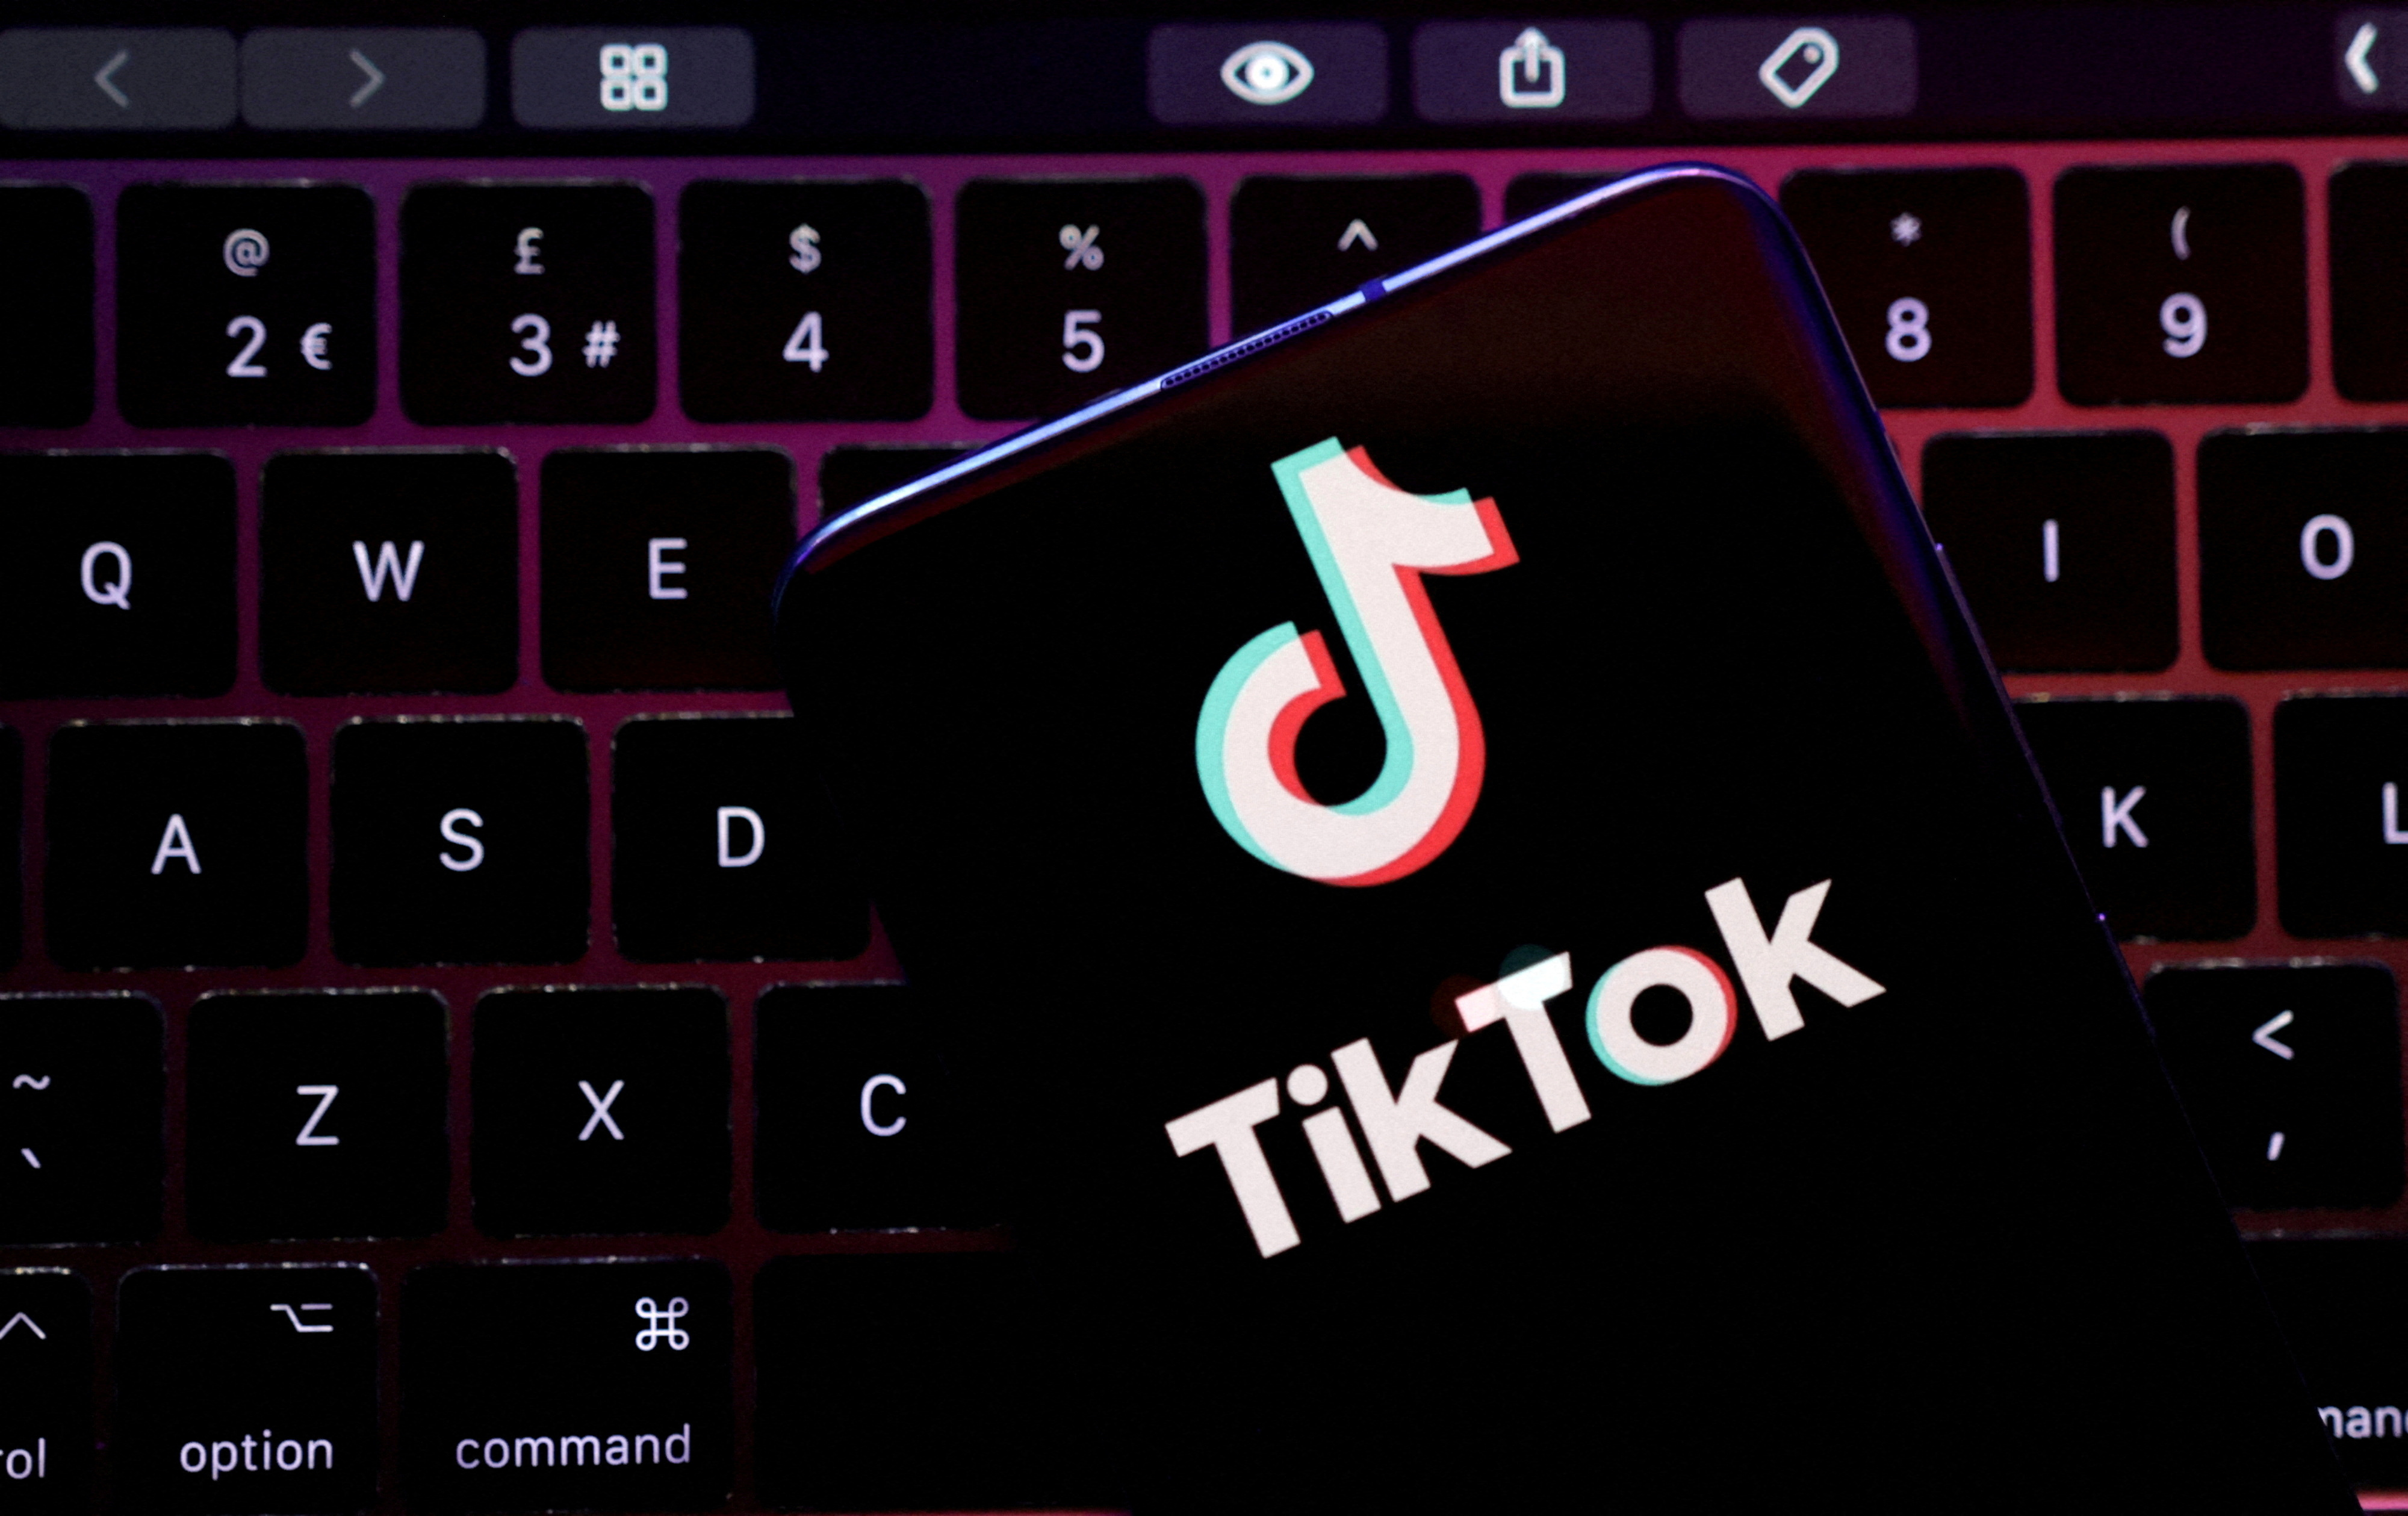 Resimde TikTok uygulama logosu gösteriliyor